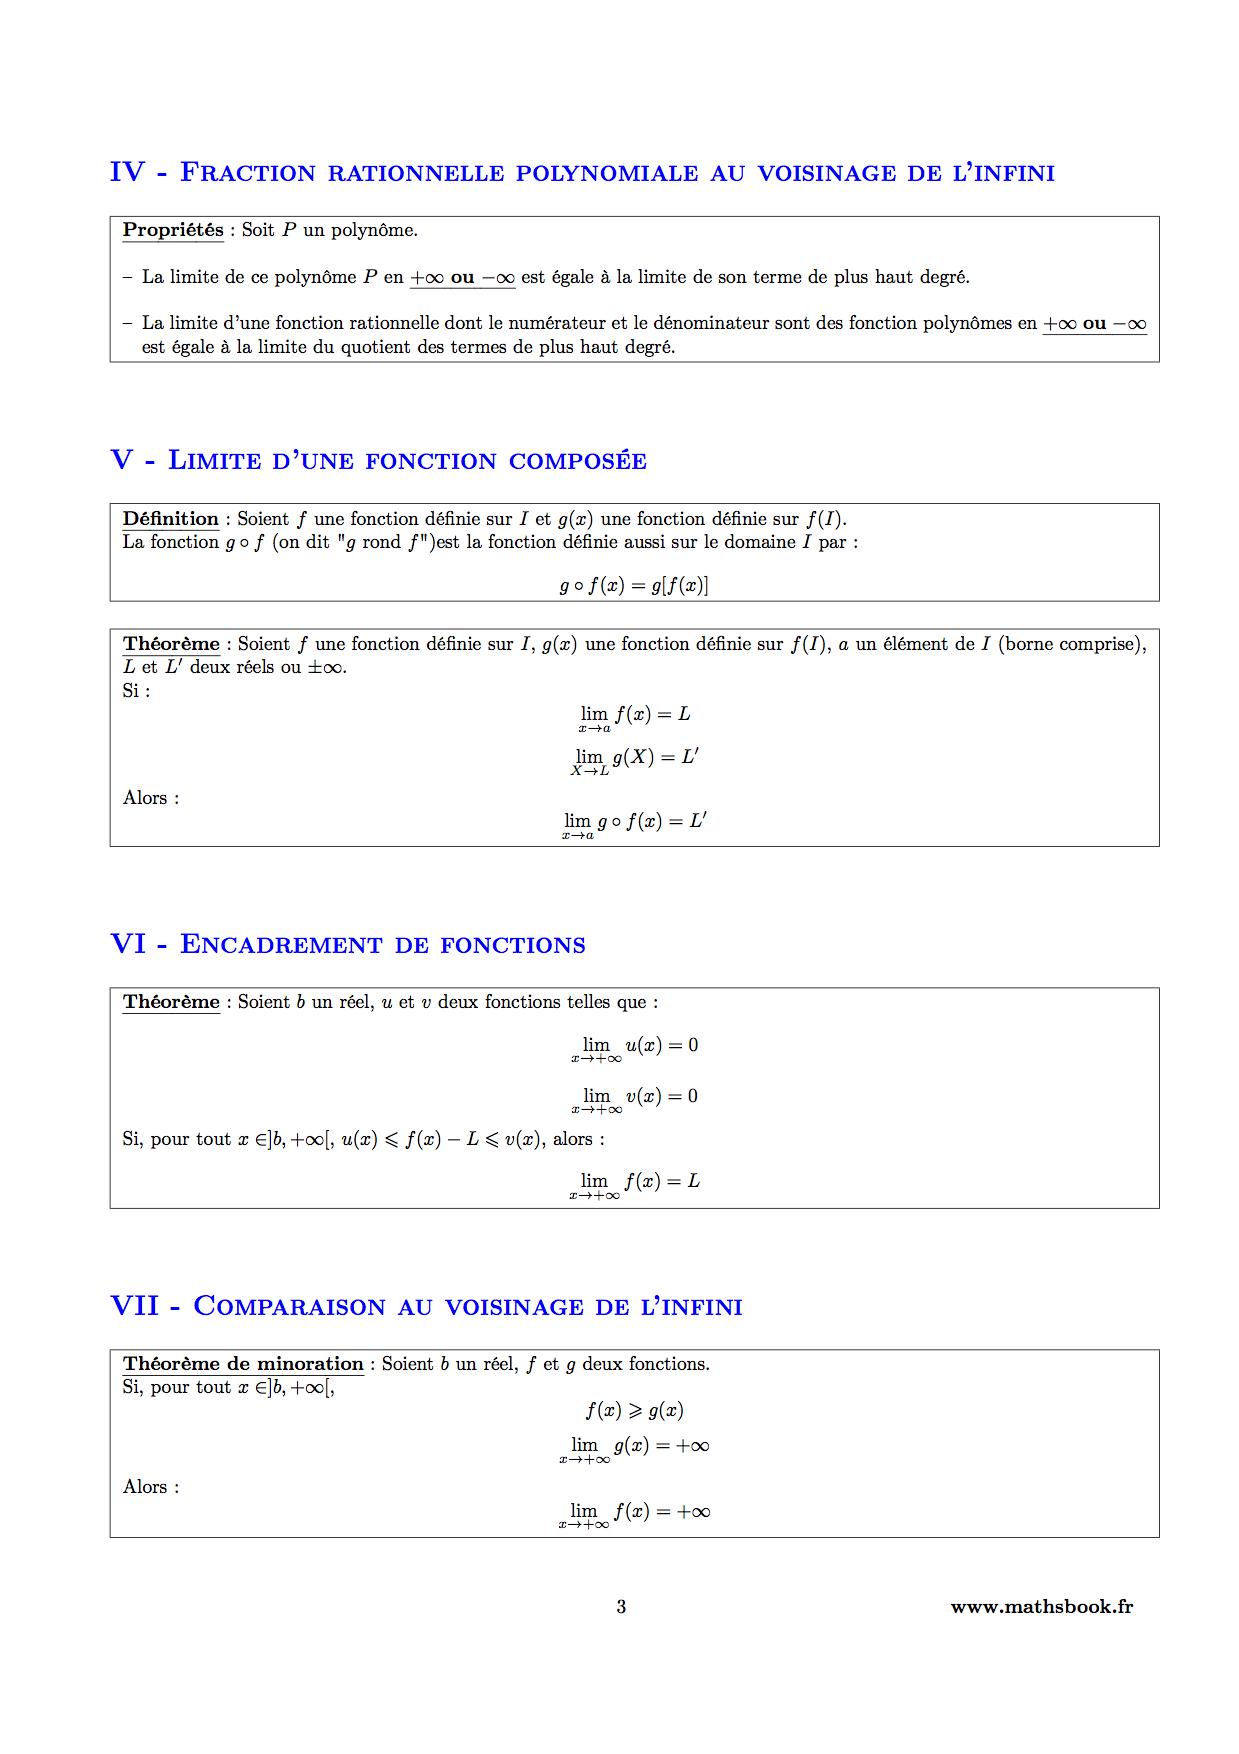 fraction rationnelle et limite fonction composee